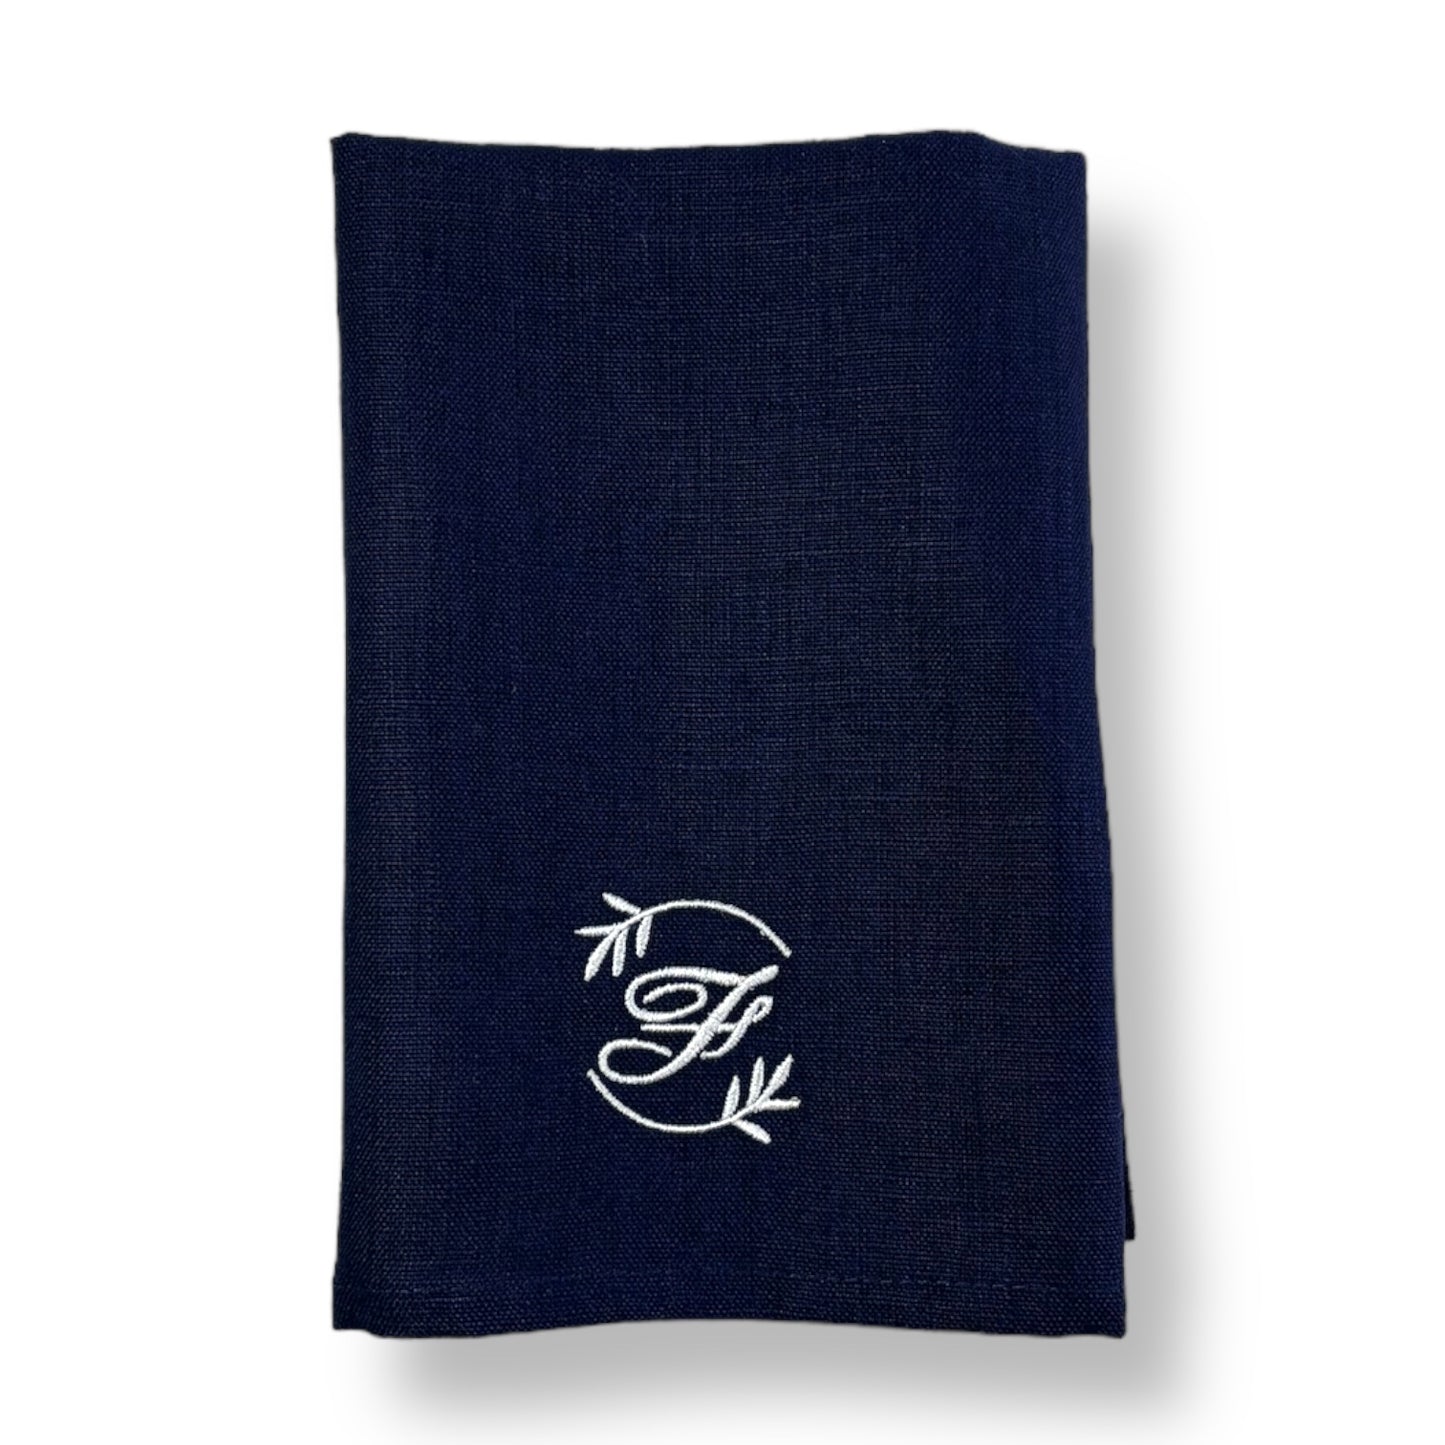 Mörkblå tygservetter av linne, ljus brodyr med initial och modern dekor runt. Personlig present.